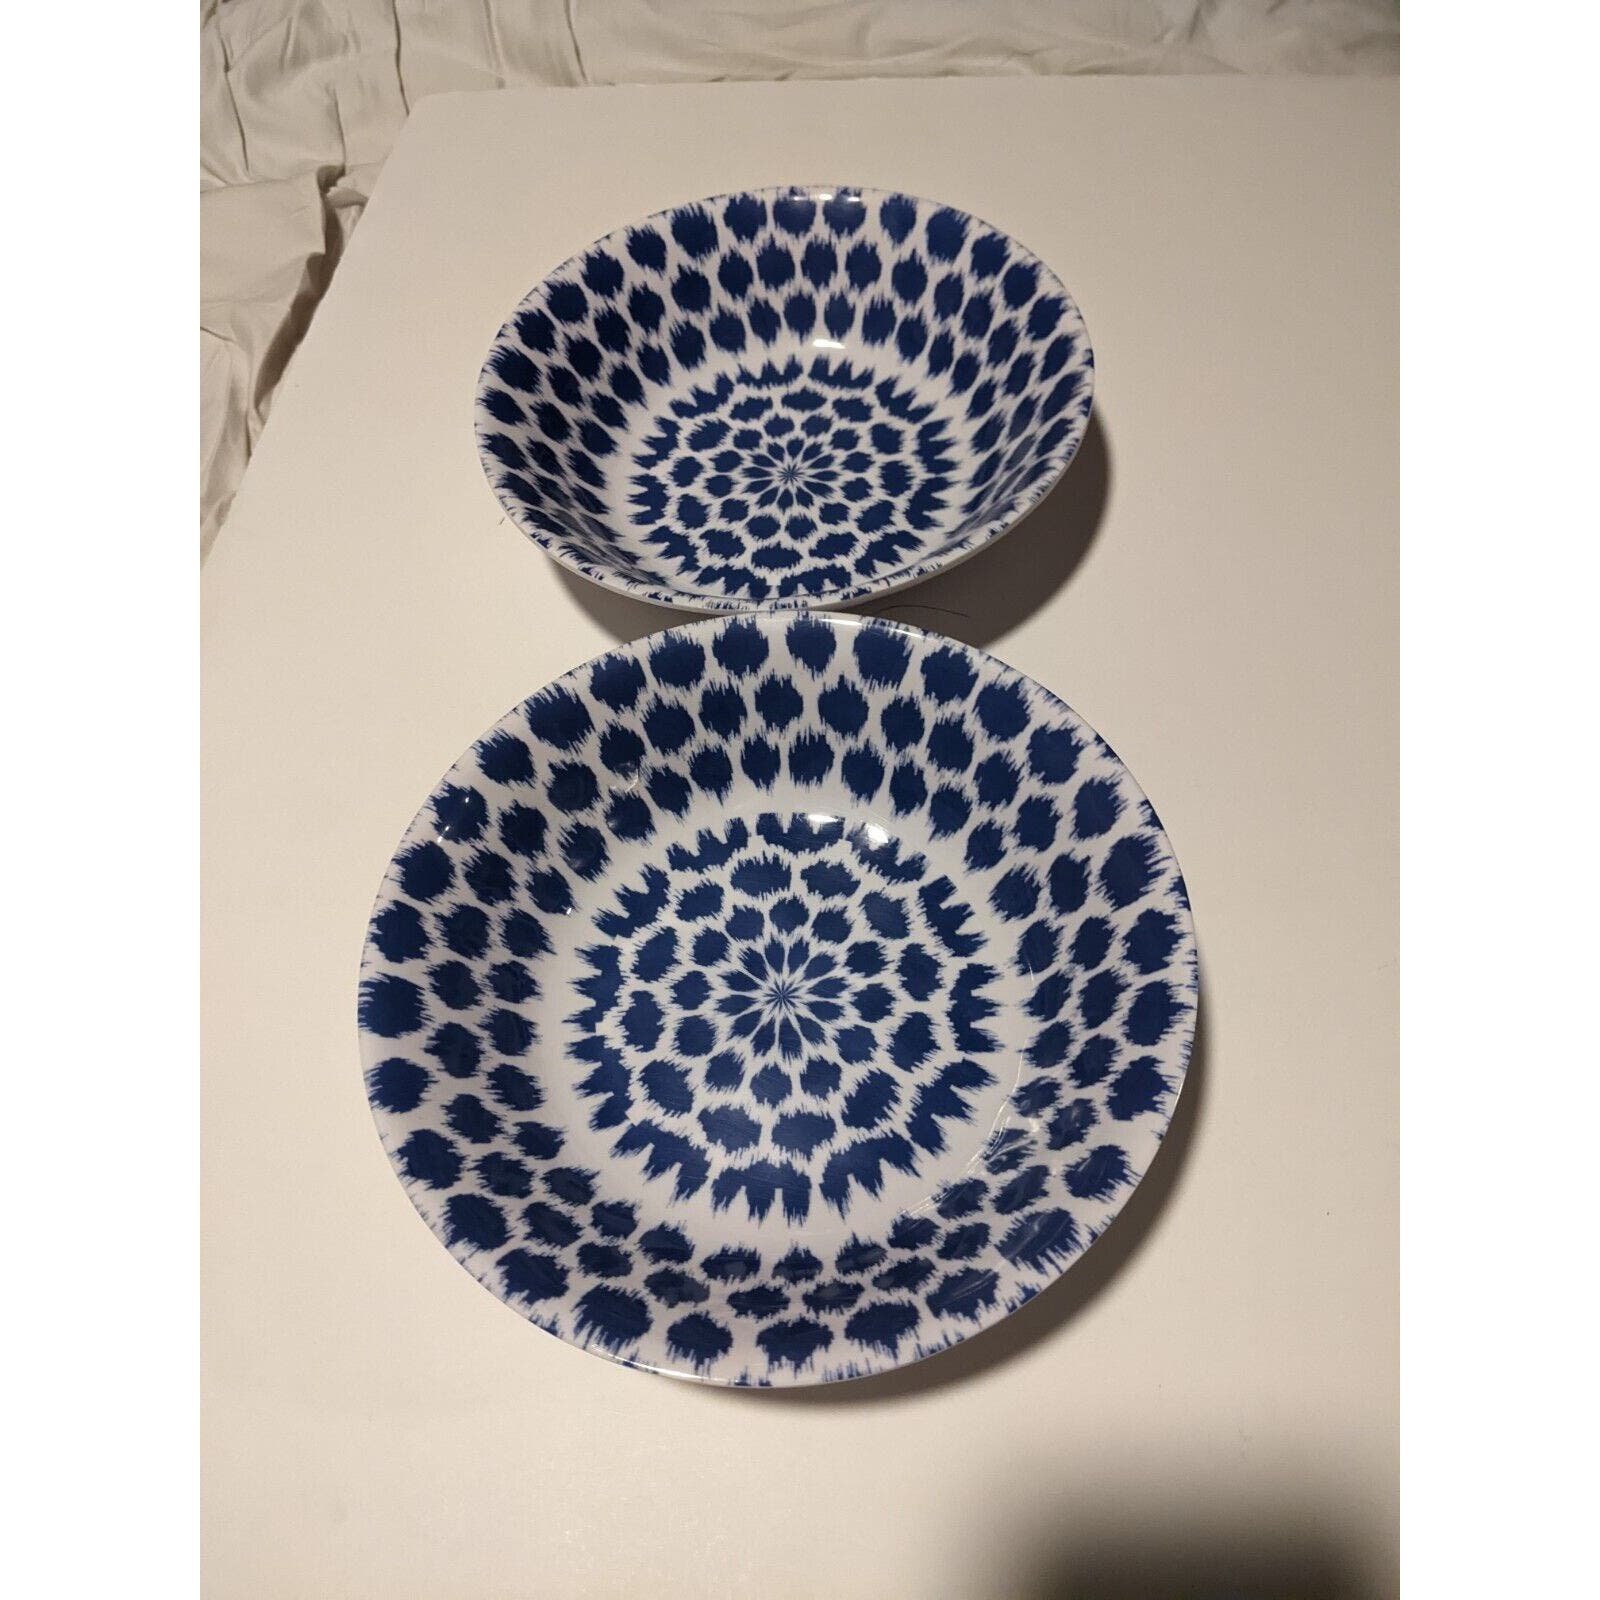 Waverly Tilt & Twirl Bowls Blue Floral Set of 2 Melamine n1s5lGGa6